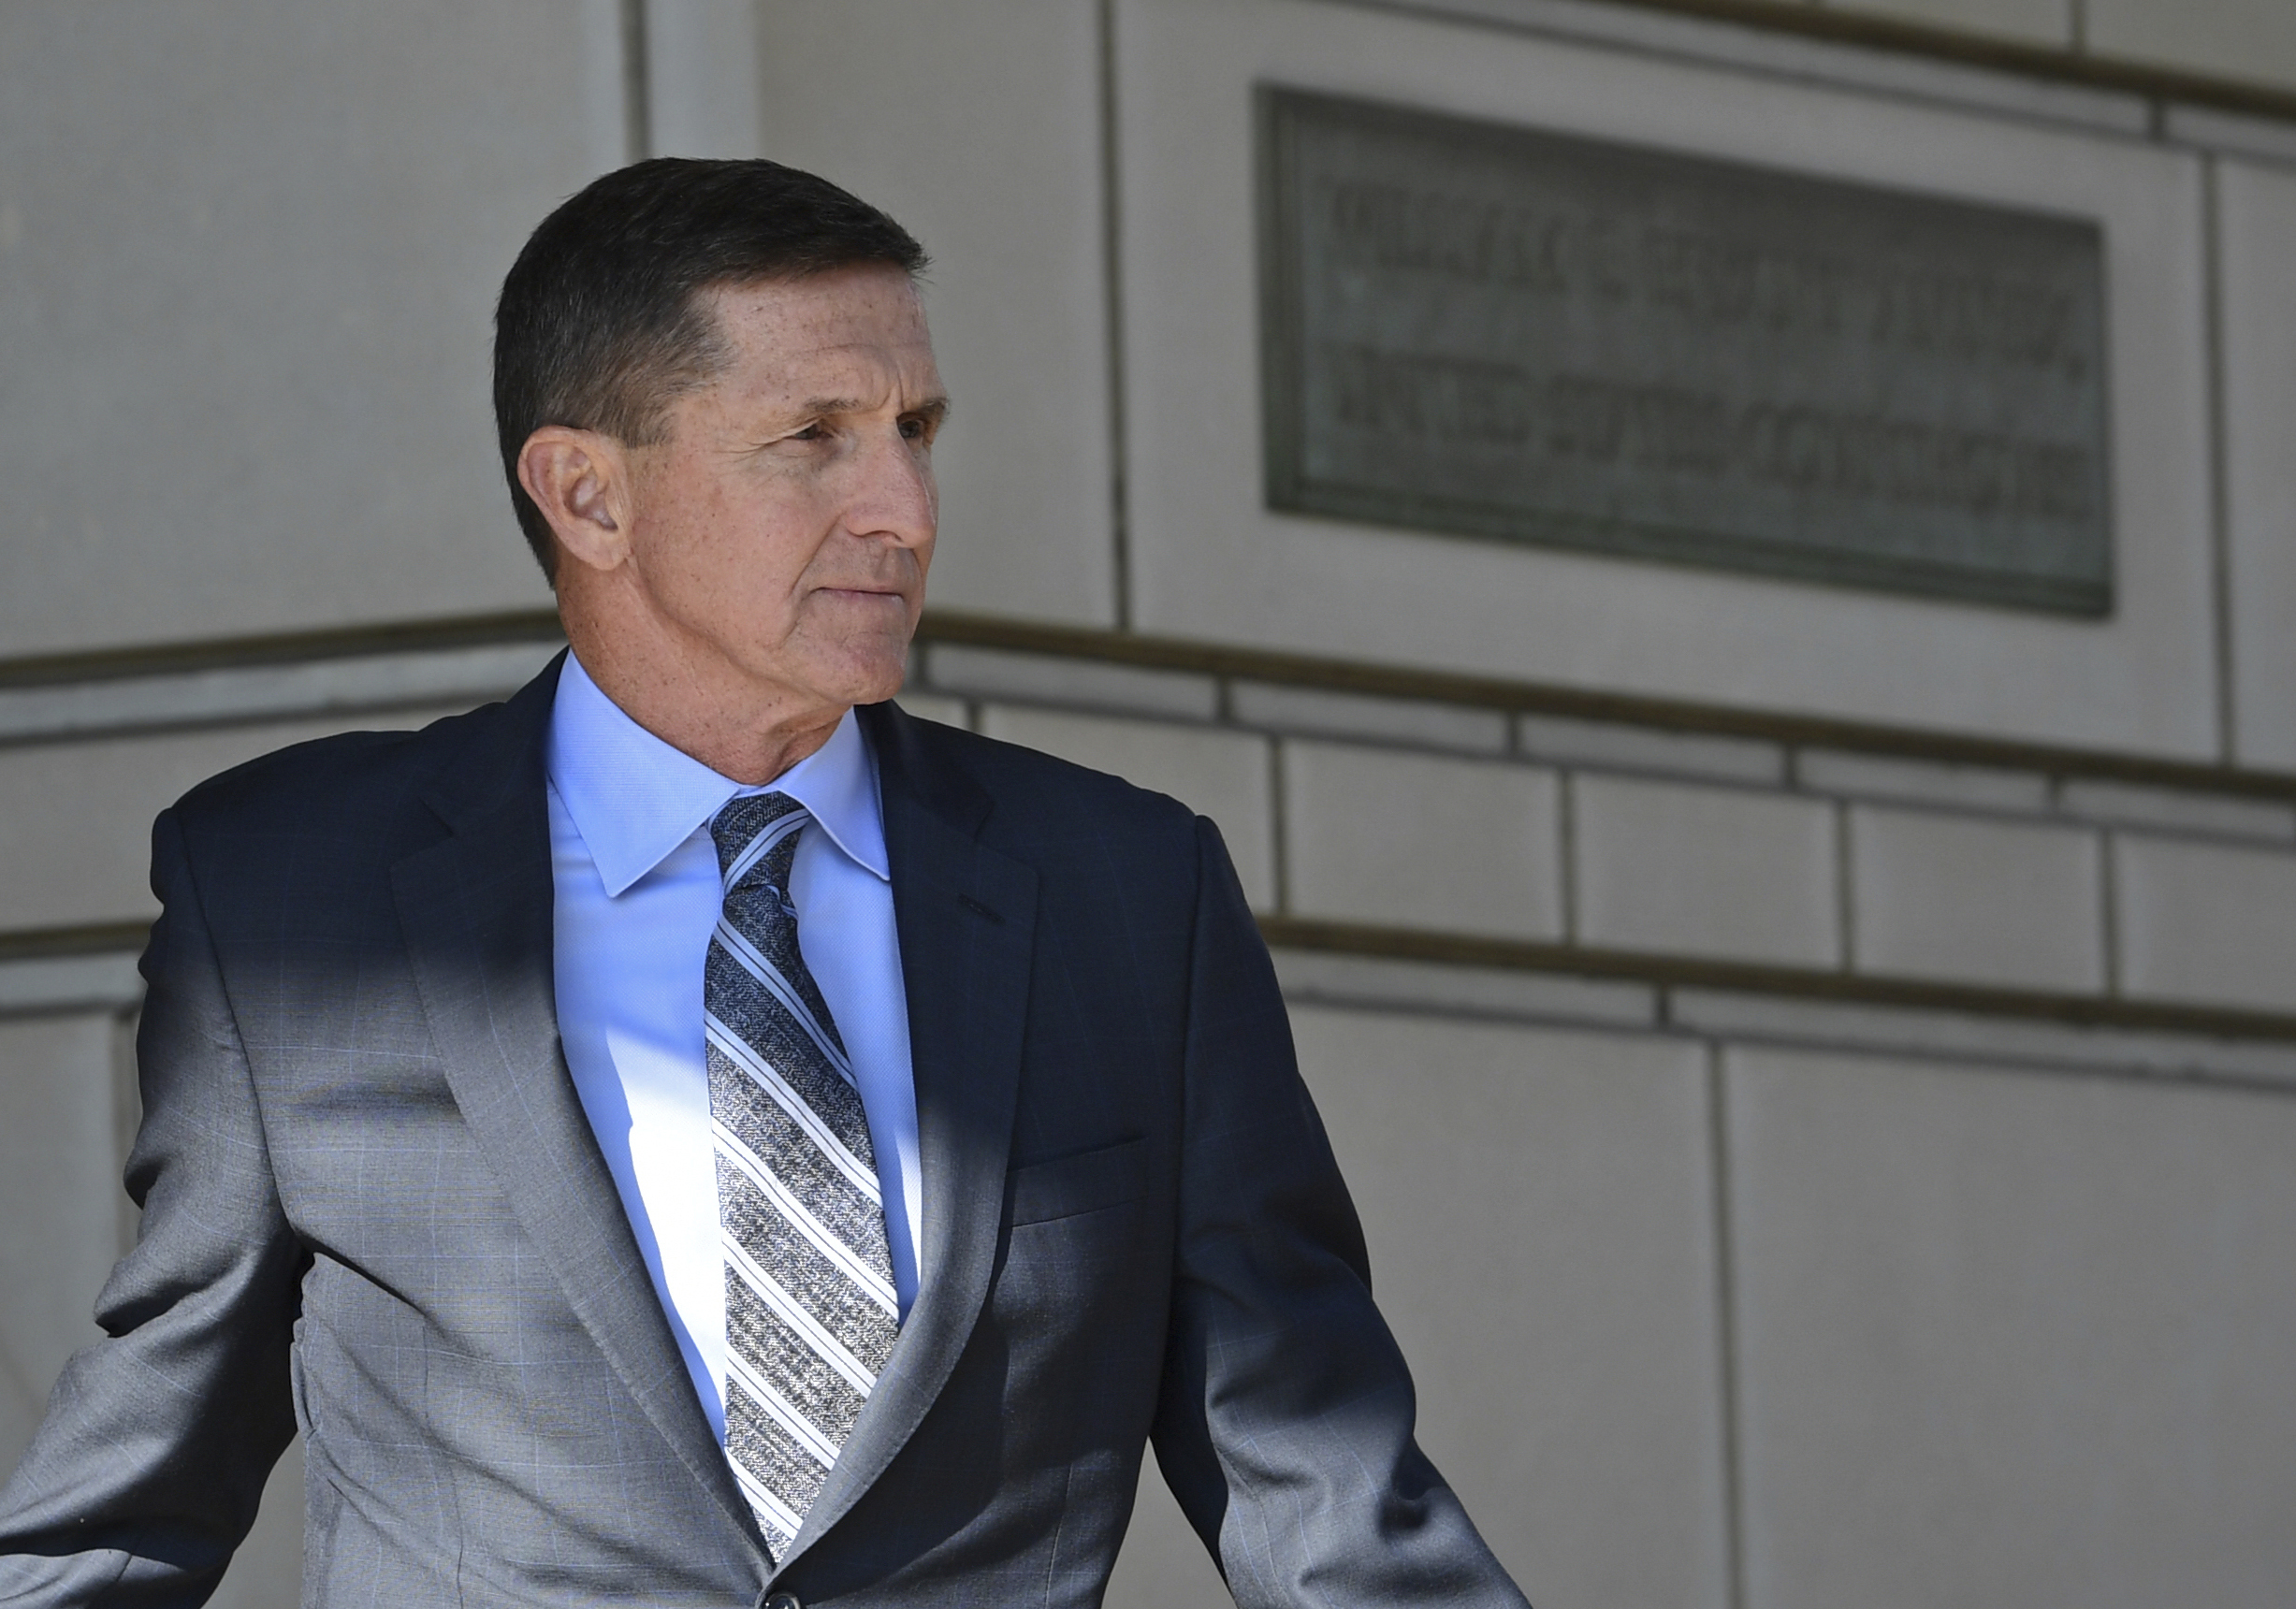 Declaraciones falsas de Flynn "obstaculizaron" investigación de Rusiagate